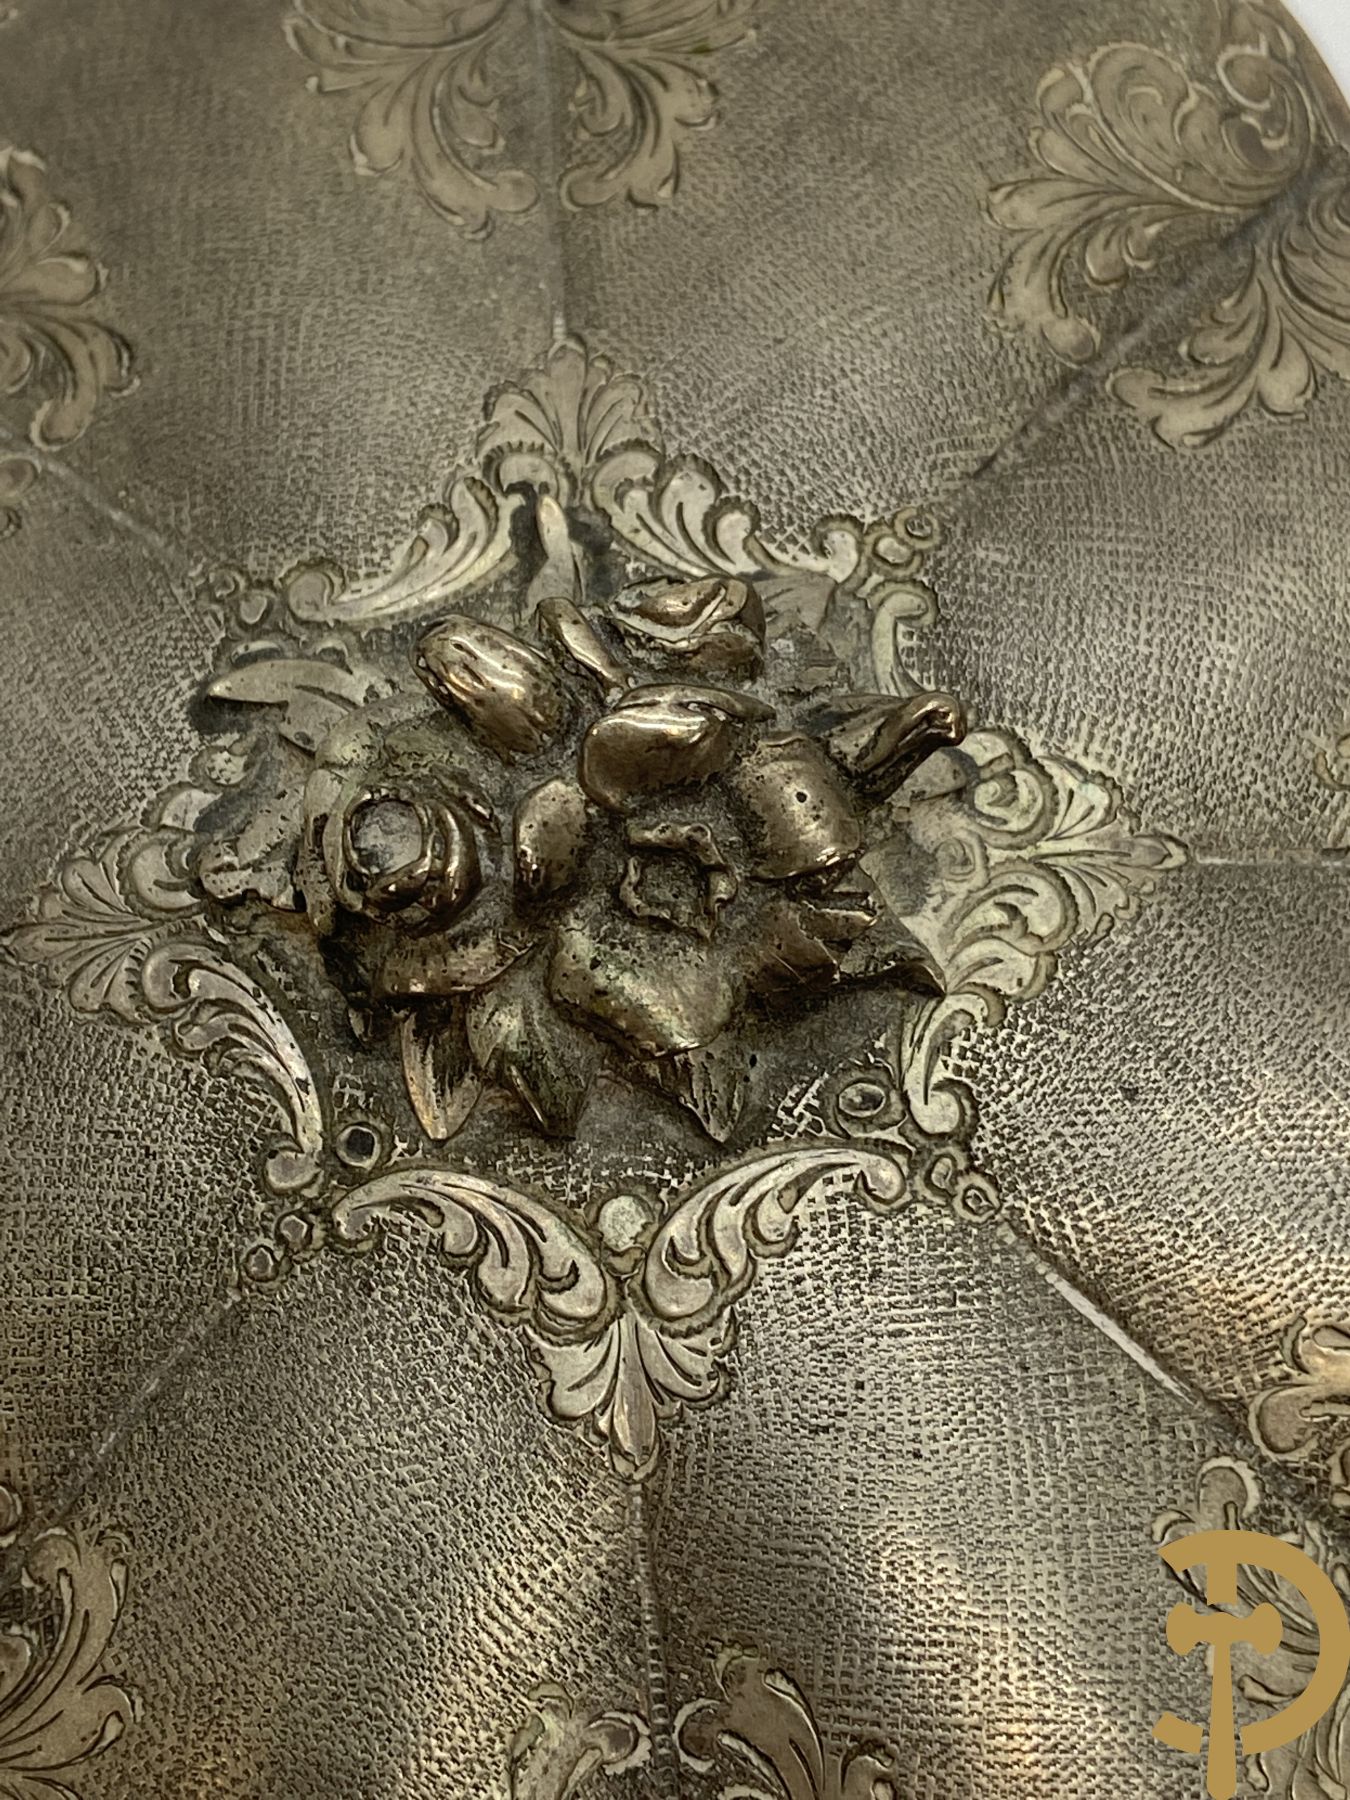 Massief zilveren dekseldoos met bloemenknop bovenaan en rocailles, onderaan gemerkt 800